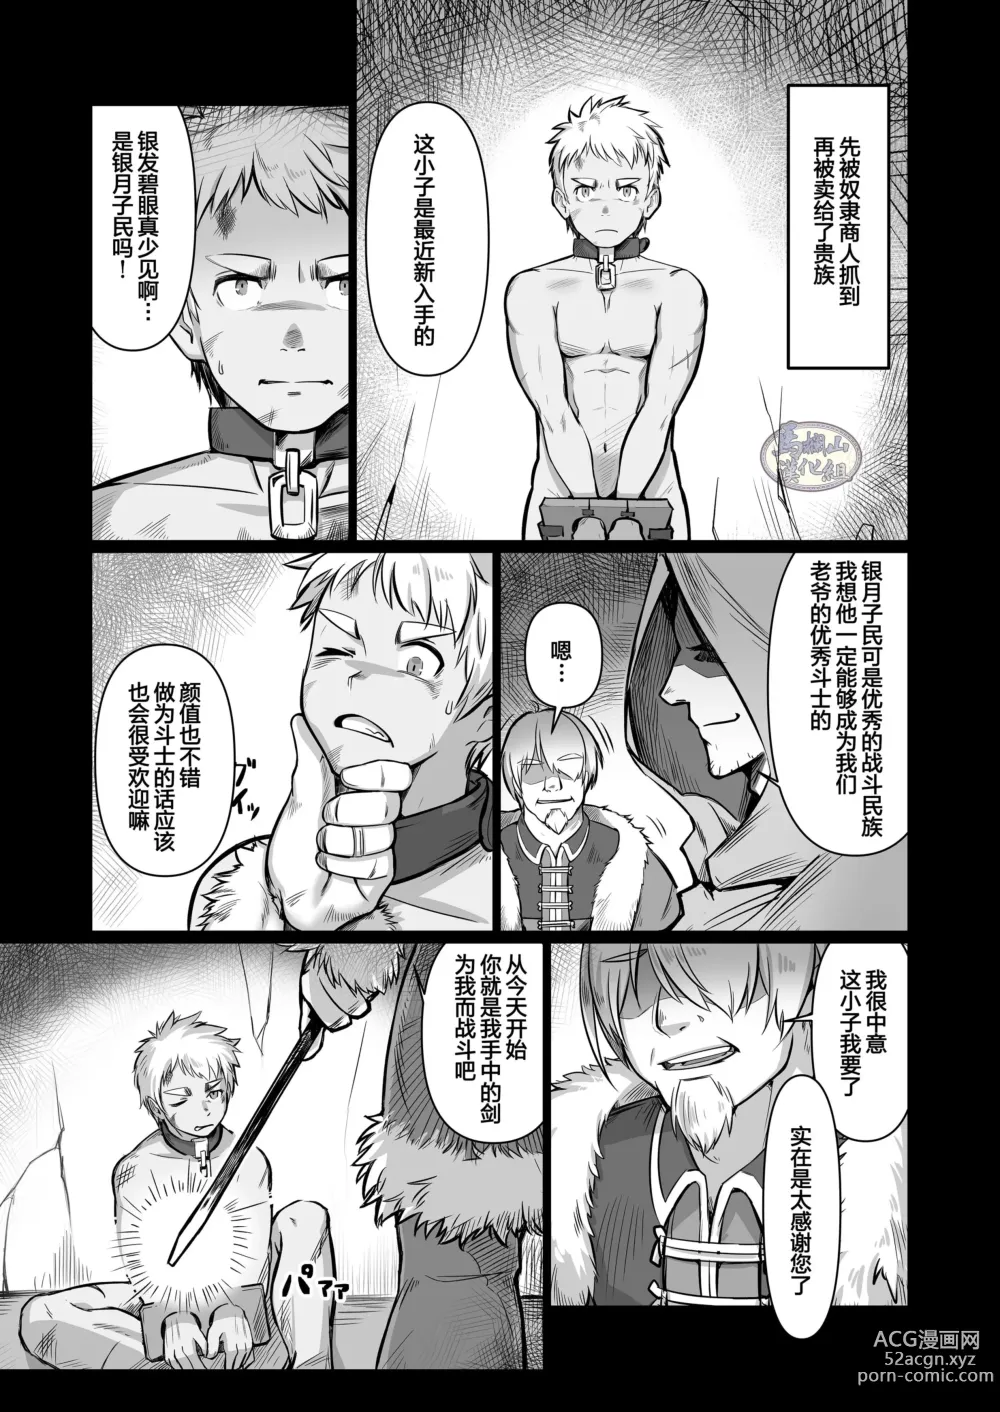 Page 11 of doujinshi 关于我在转生之后身边全是肌肉男的奇闻轶事2